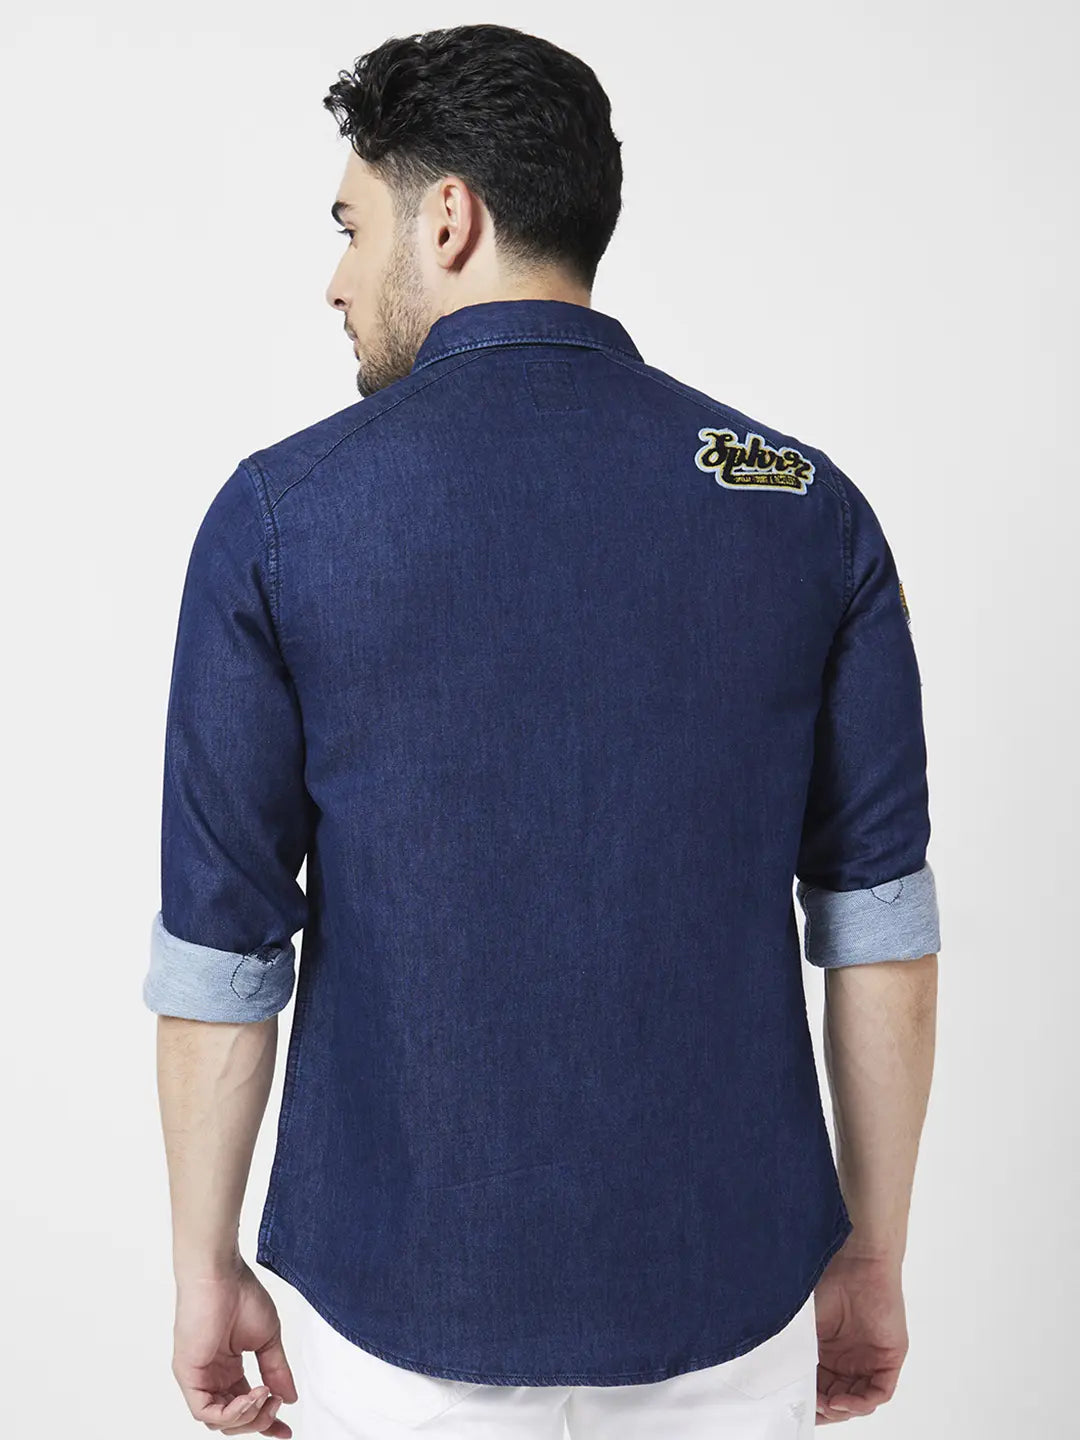 Denim blue shirt Combination pants | Men's denim style, Blue shirt  combination, Combination pants